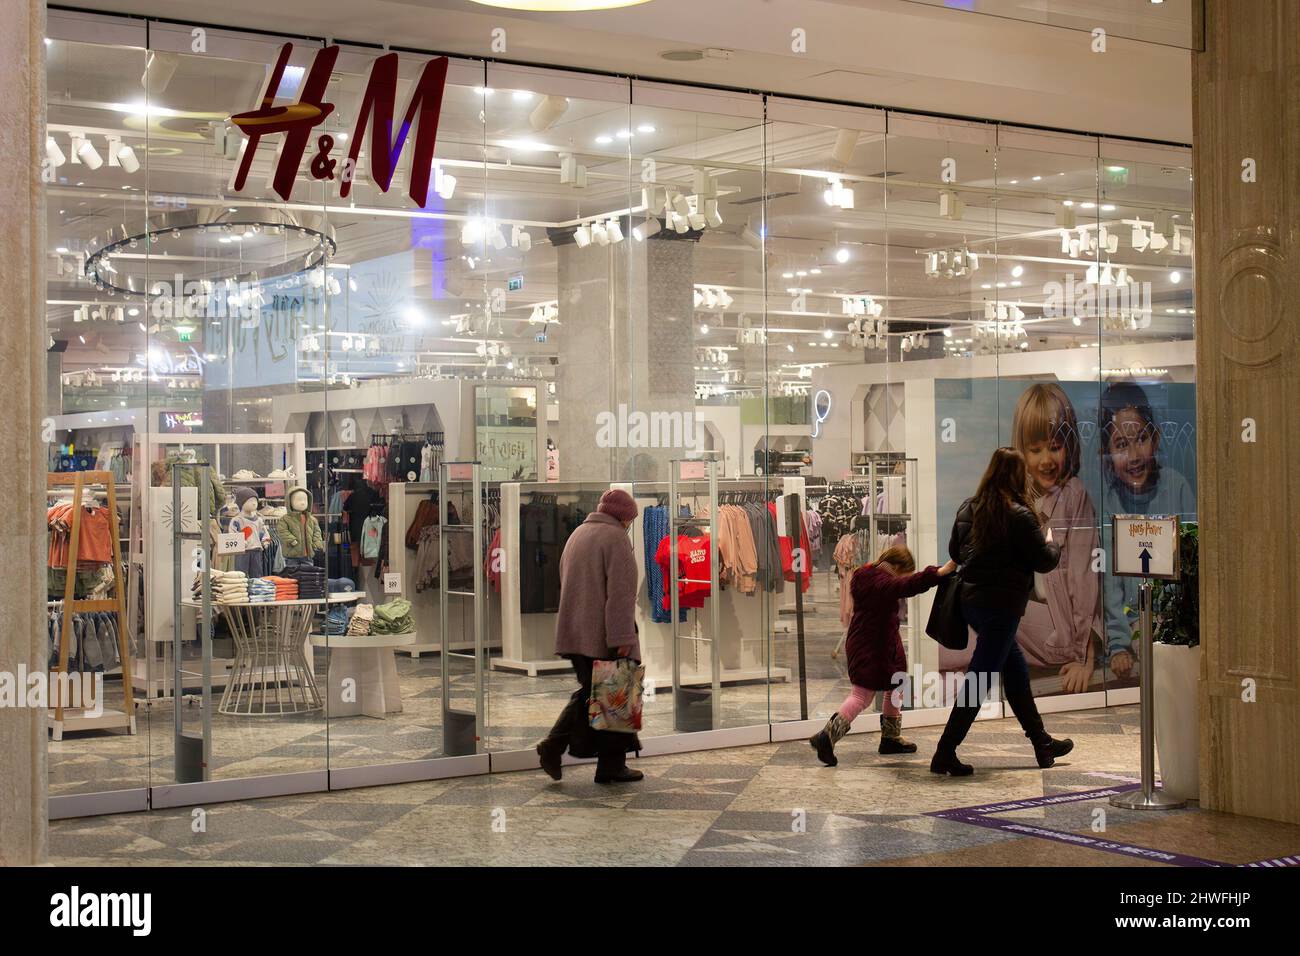 Hm poland. H M магазин. HM магазин одежды. H&M hennes & Mauritz одежда. H M В России.